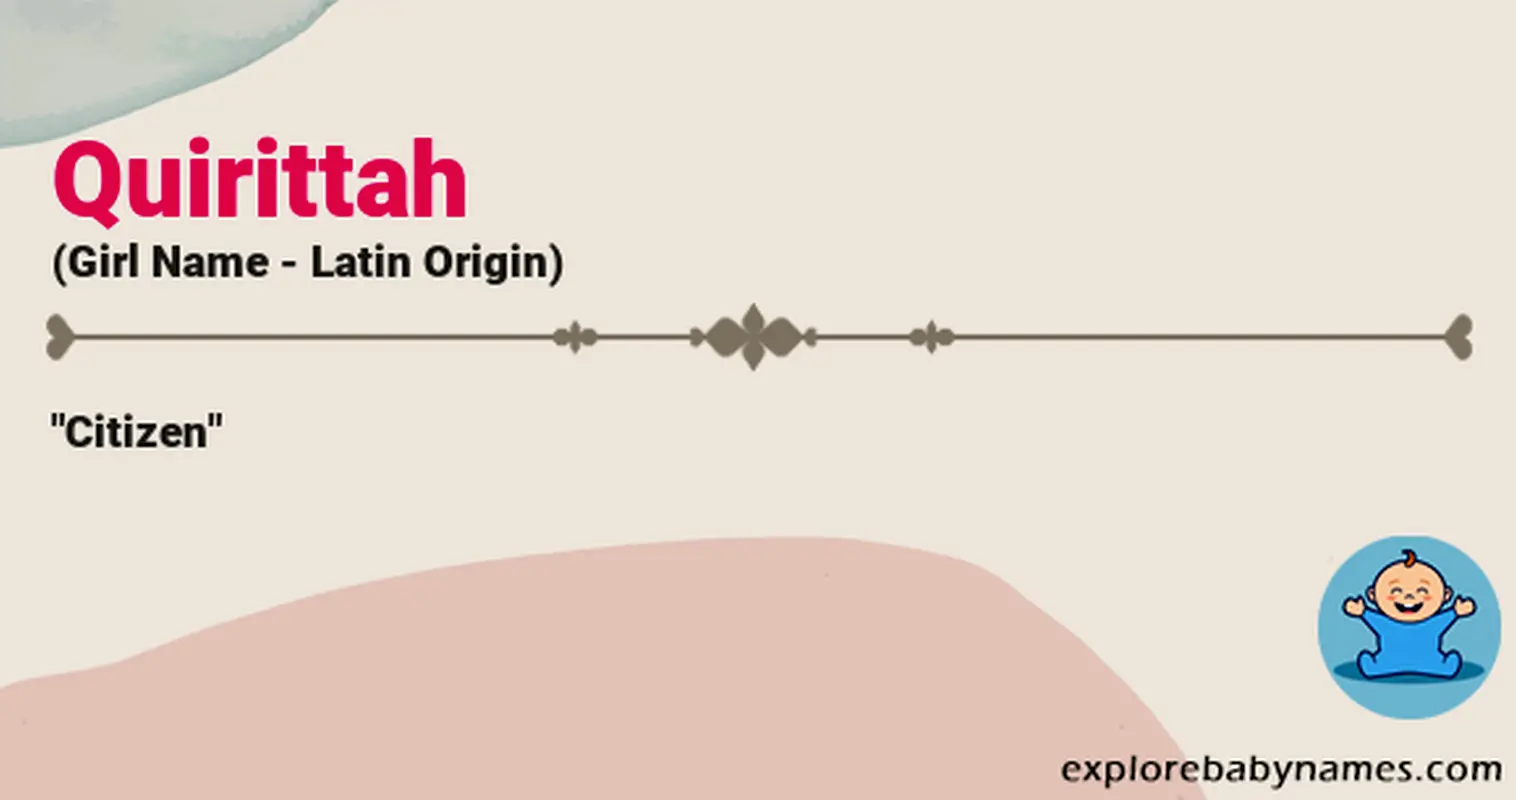 Meaning of Quirittah